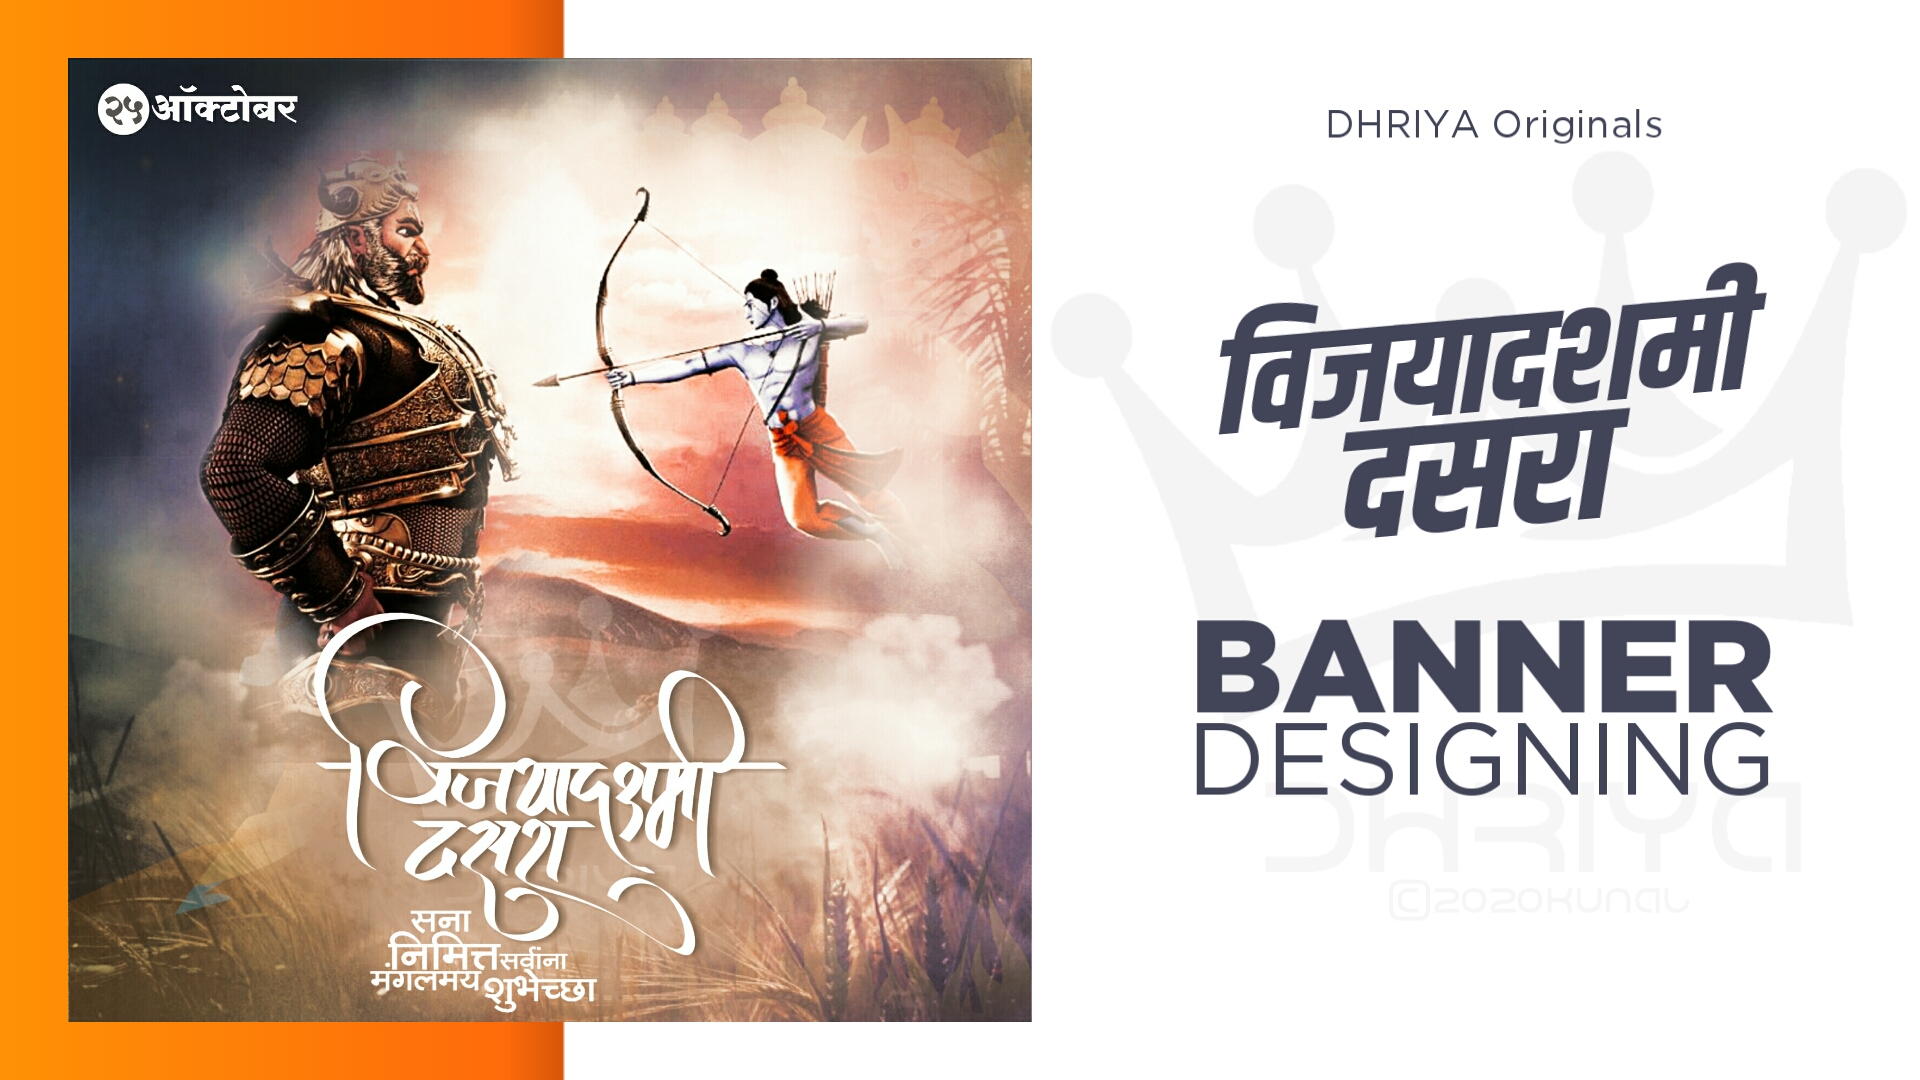 Dussehra / Dasara Banner Designing - DHRIYA